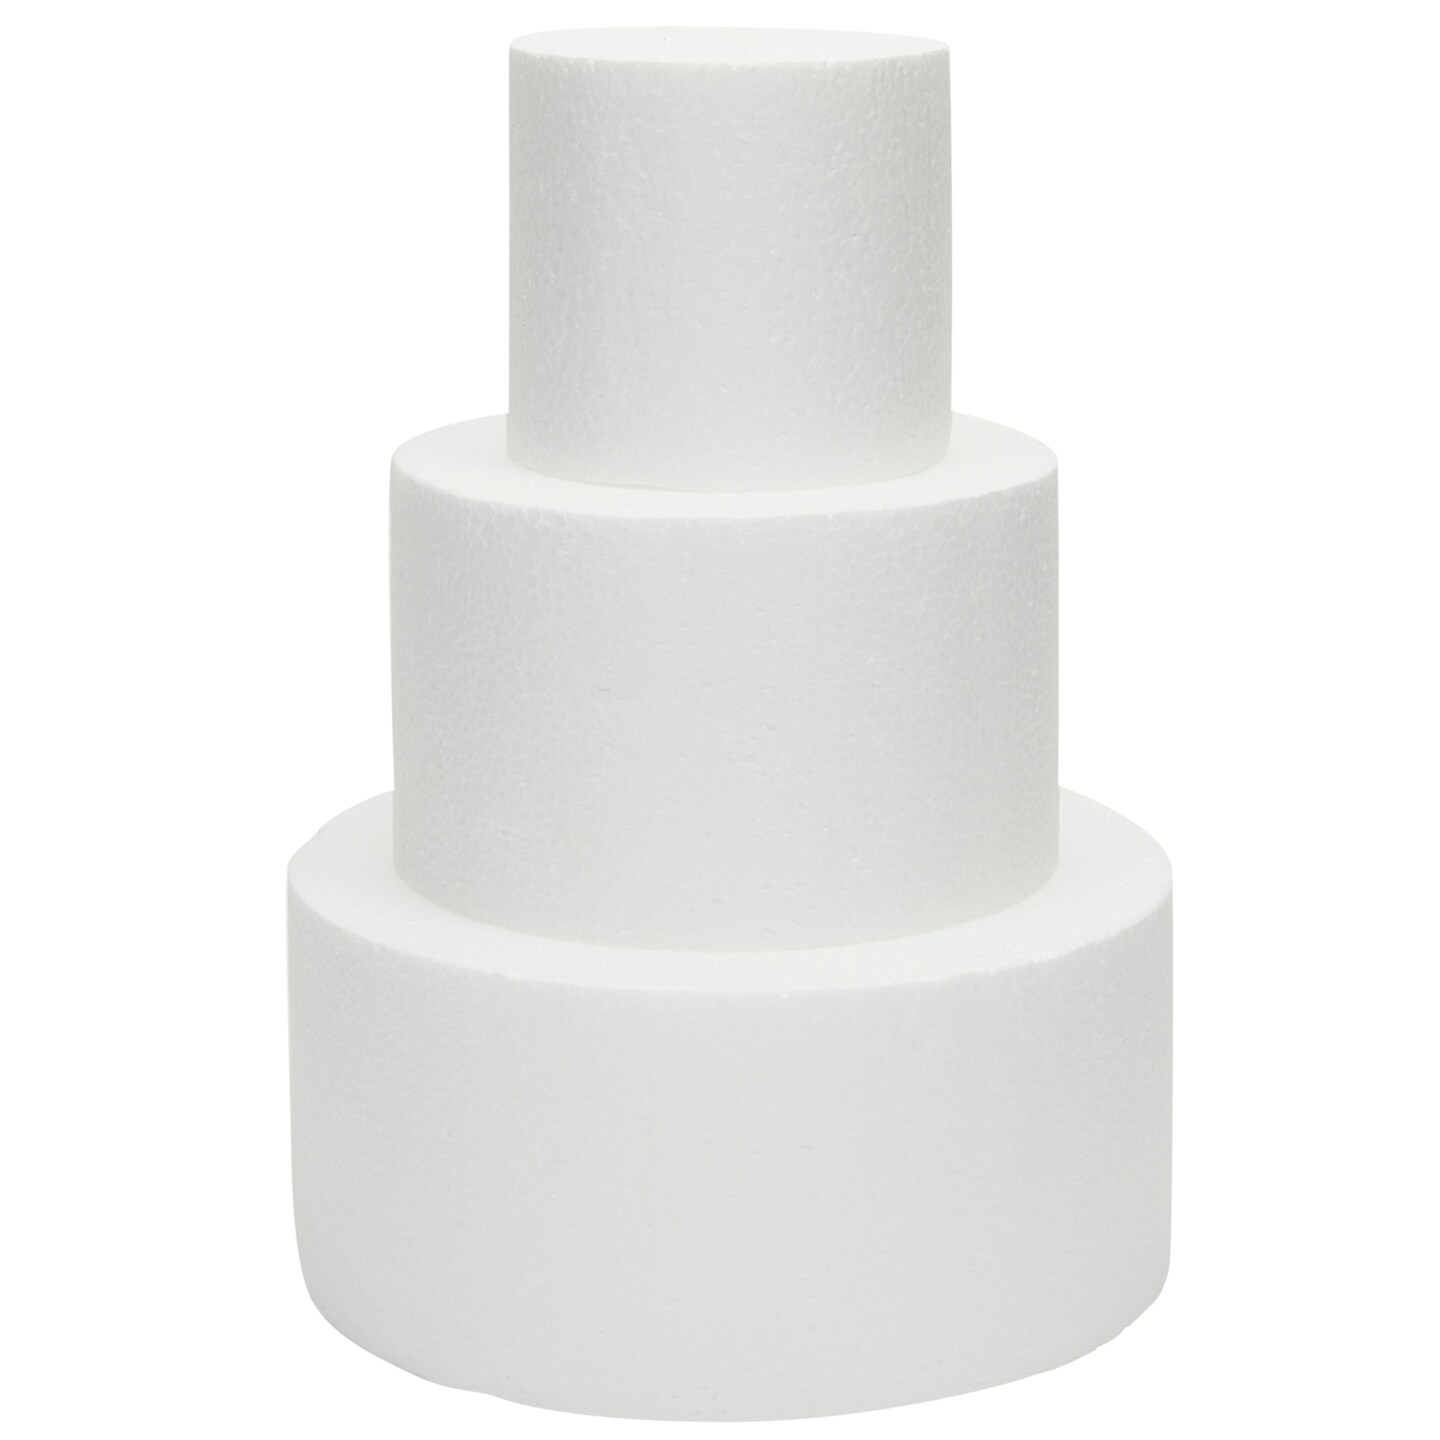 Styrofoam Round Cake Dummy, 6 x 4